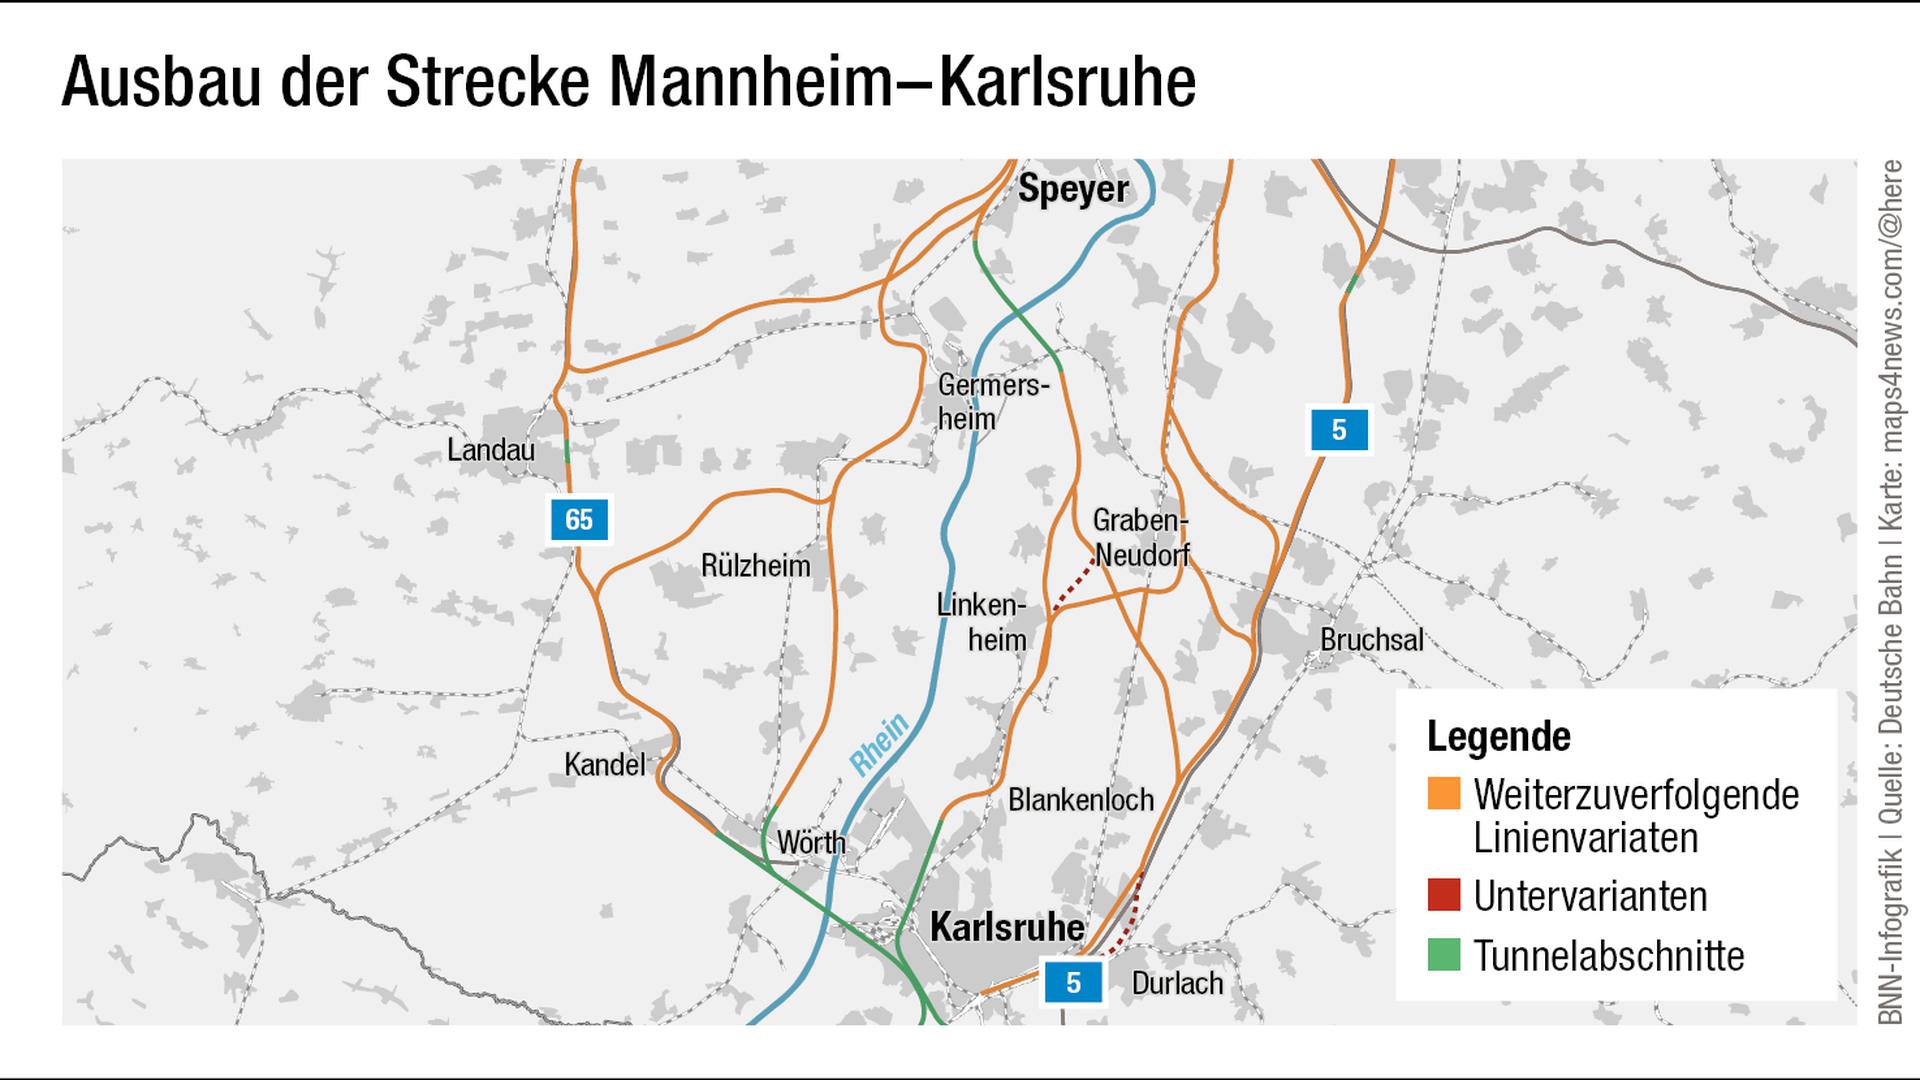 Ausbau der Strecke Mannheim - Karlsruhe